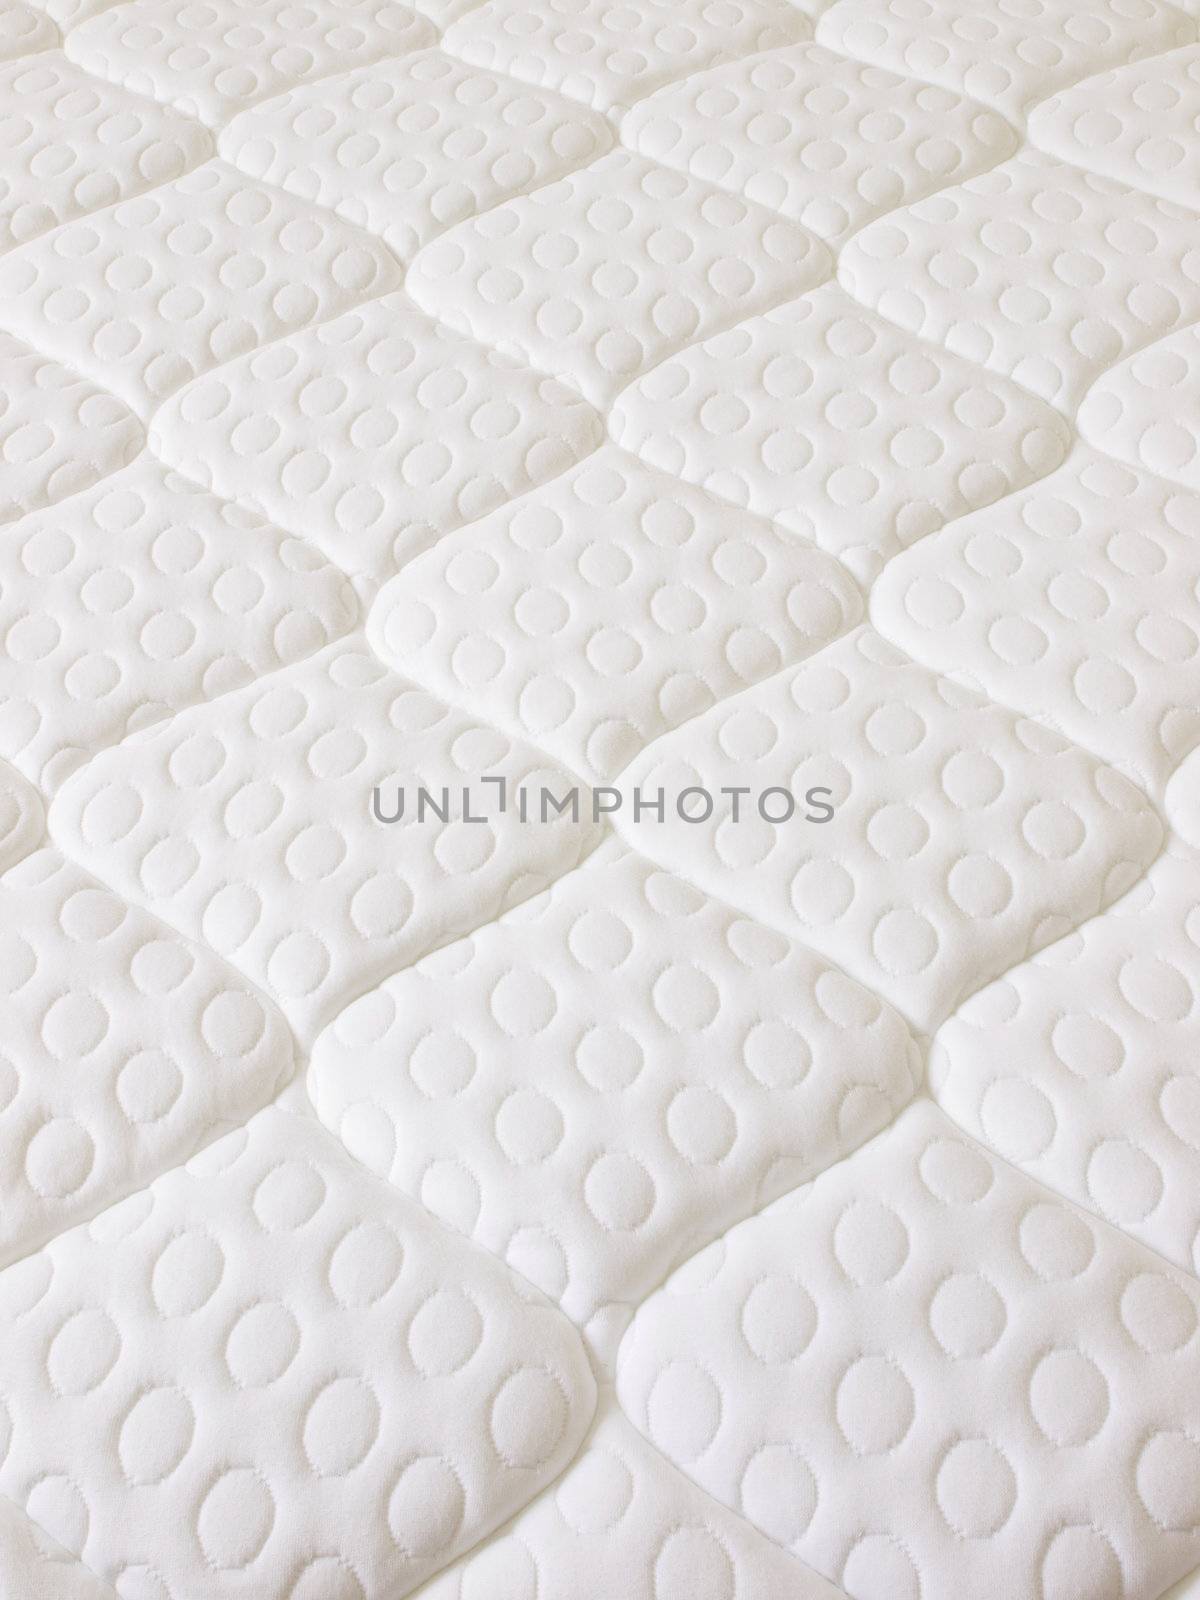 mattress by zkruger